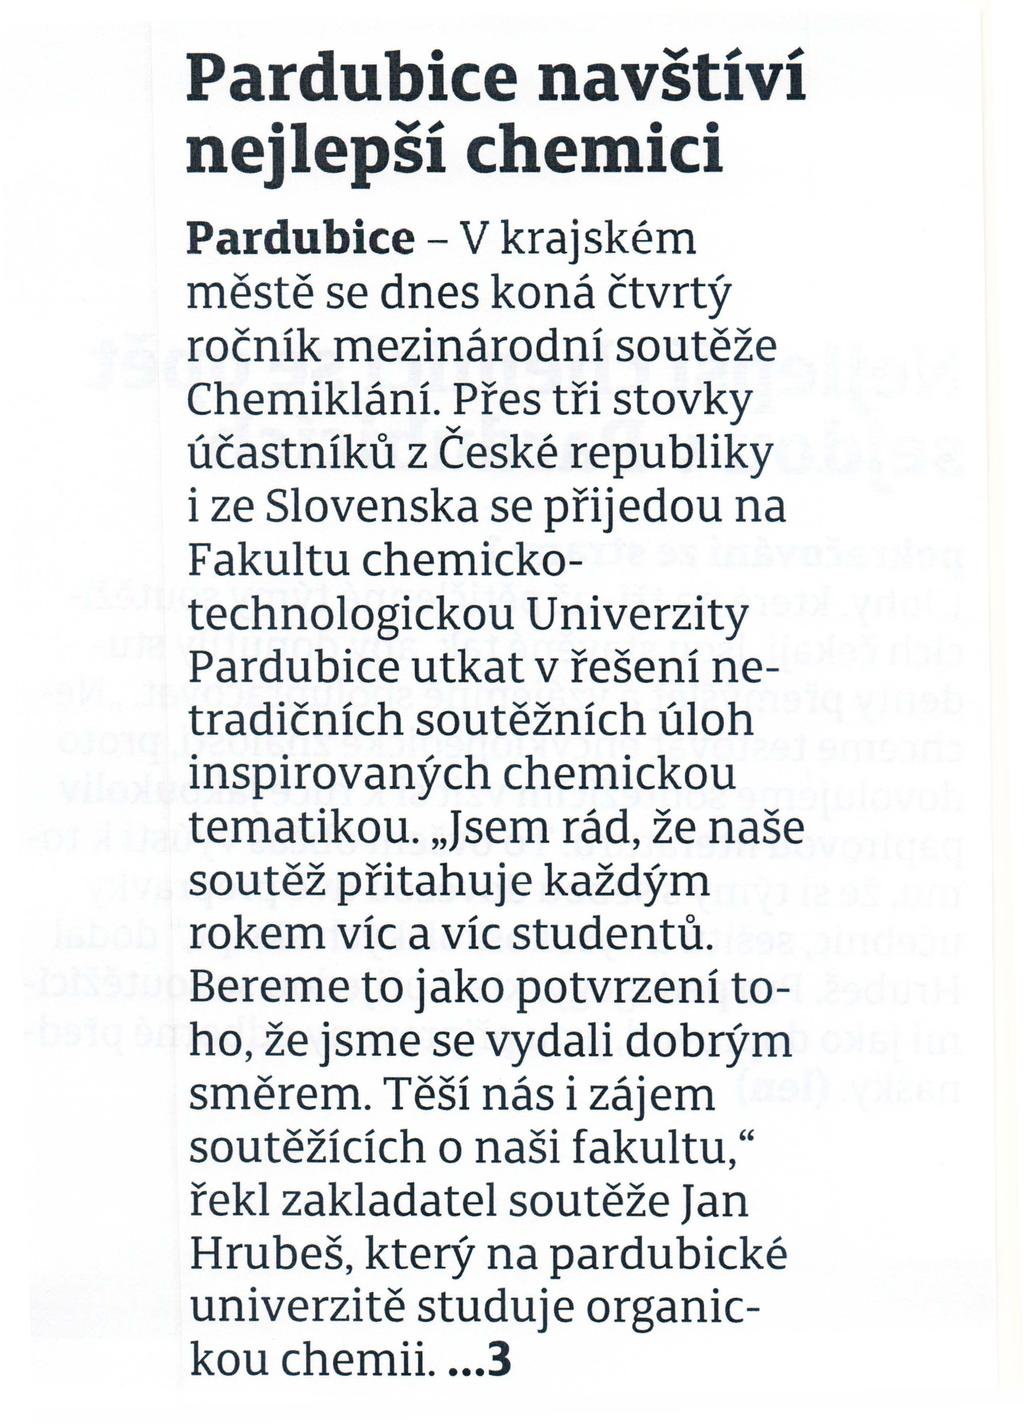 Pardubice navstivi nejlepsi chemici Pardubice- V krajskem meste se dnes kona ctvrty rocnik mezinarodni souteze Cherniklani.